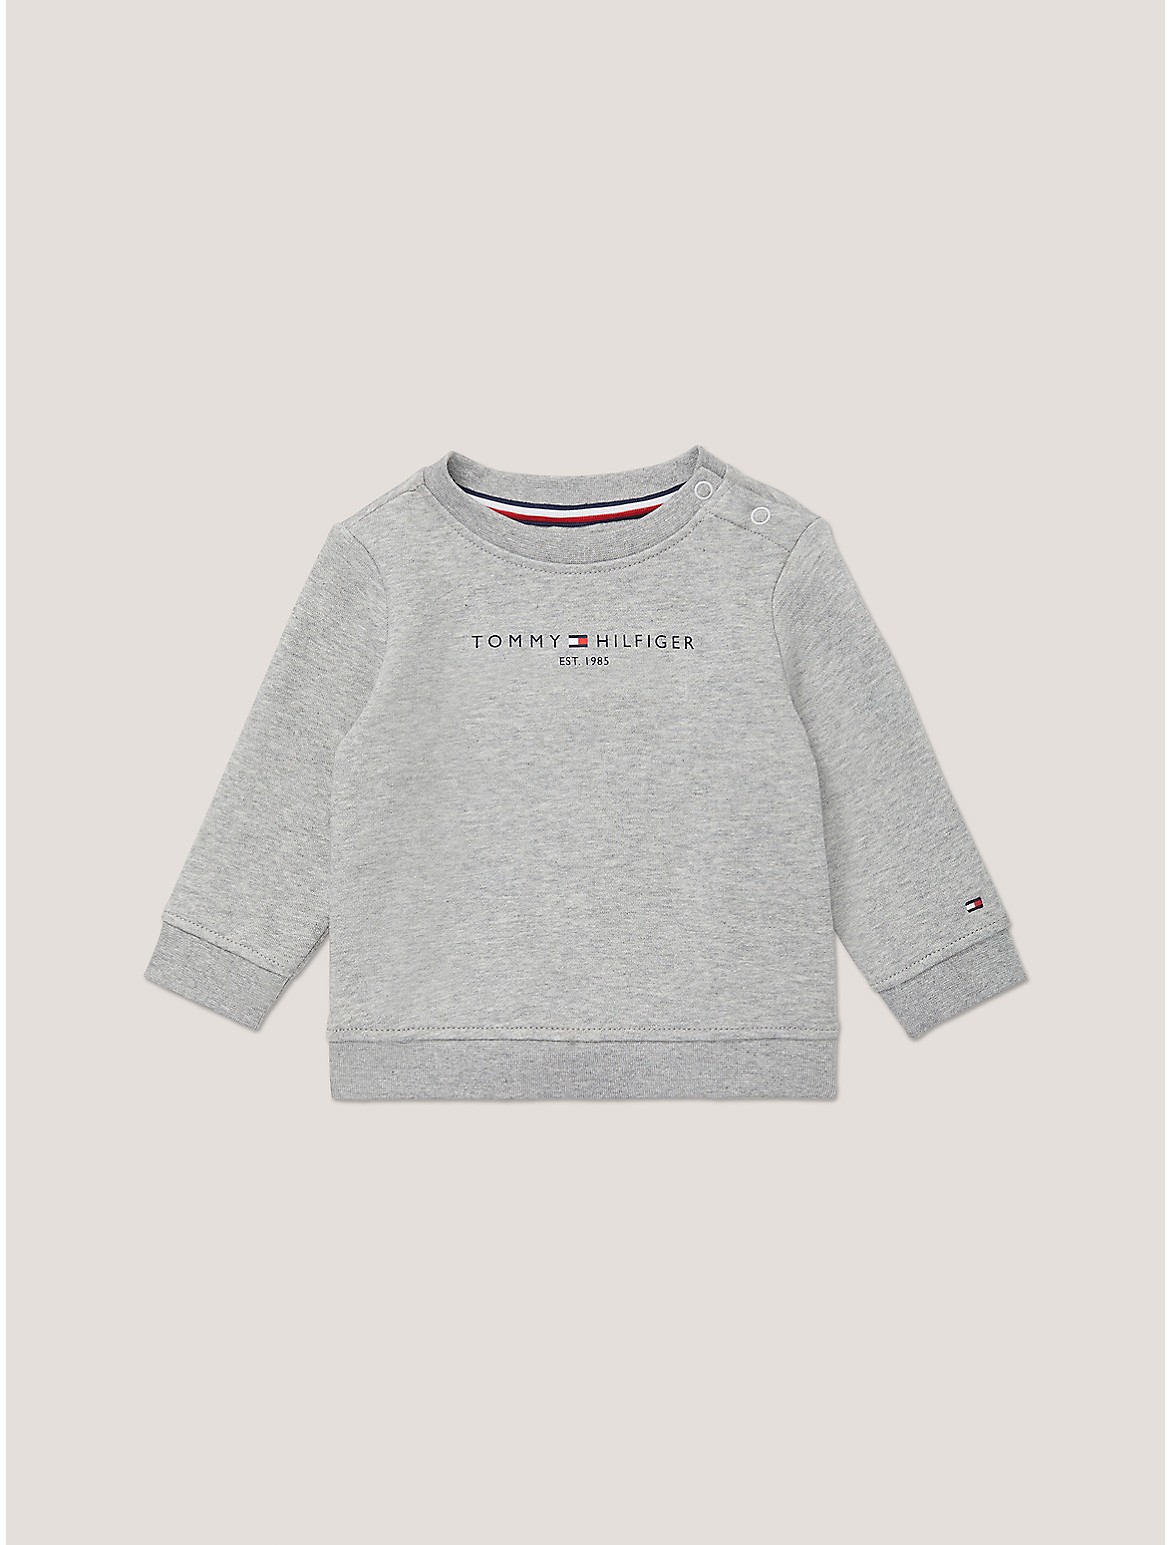 Tommy Hilfiger Boys' Babies' Tommy Logo Sweatshirt - Grey - 18M